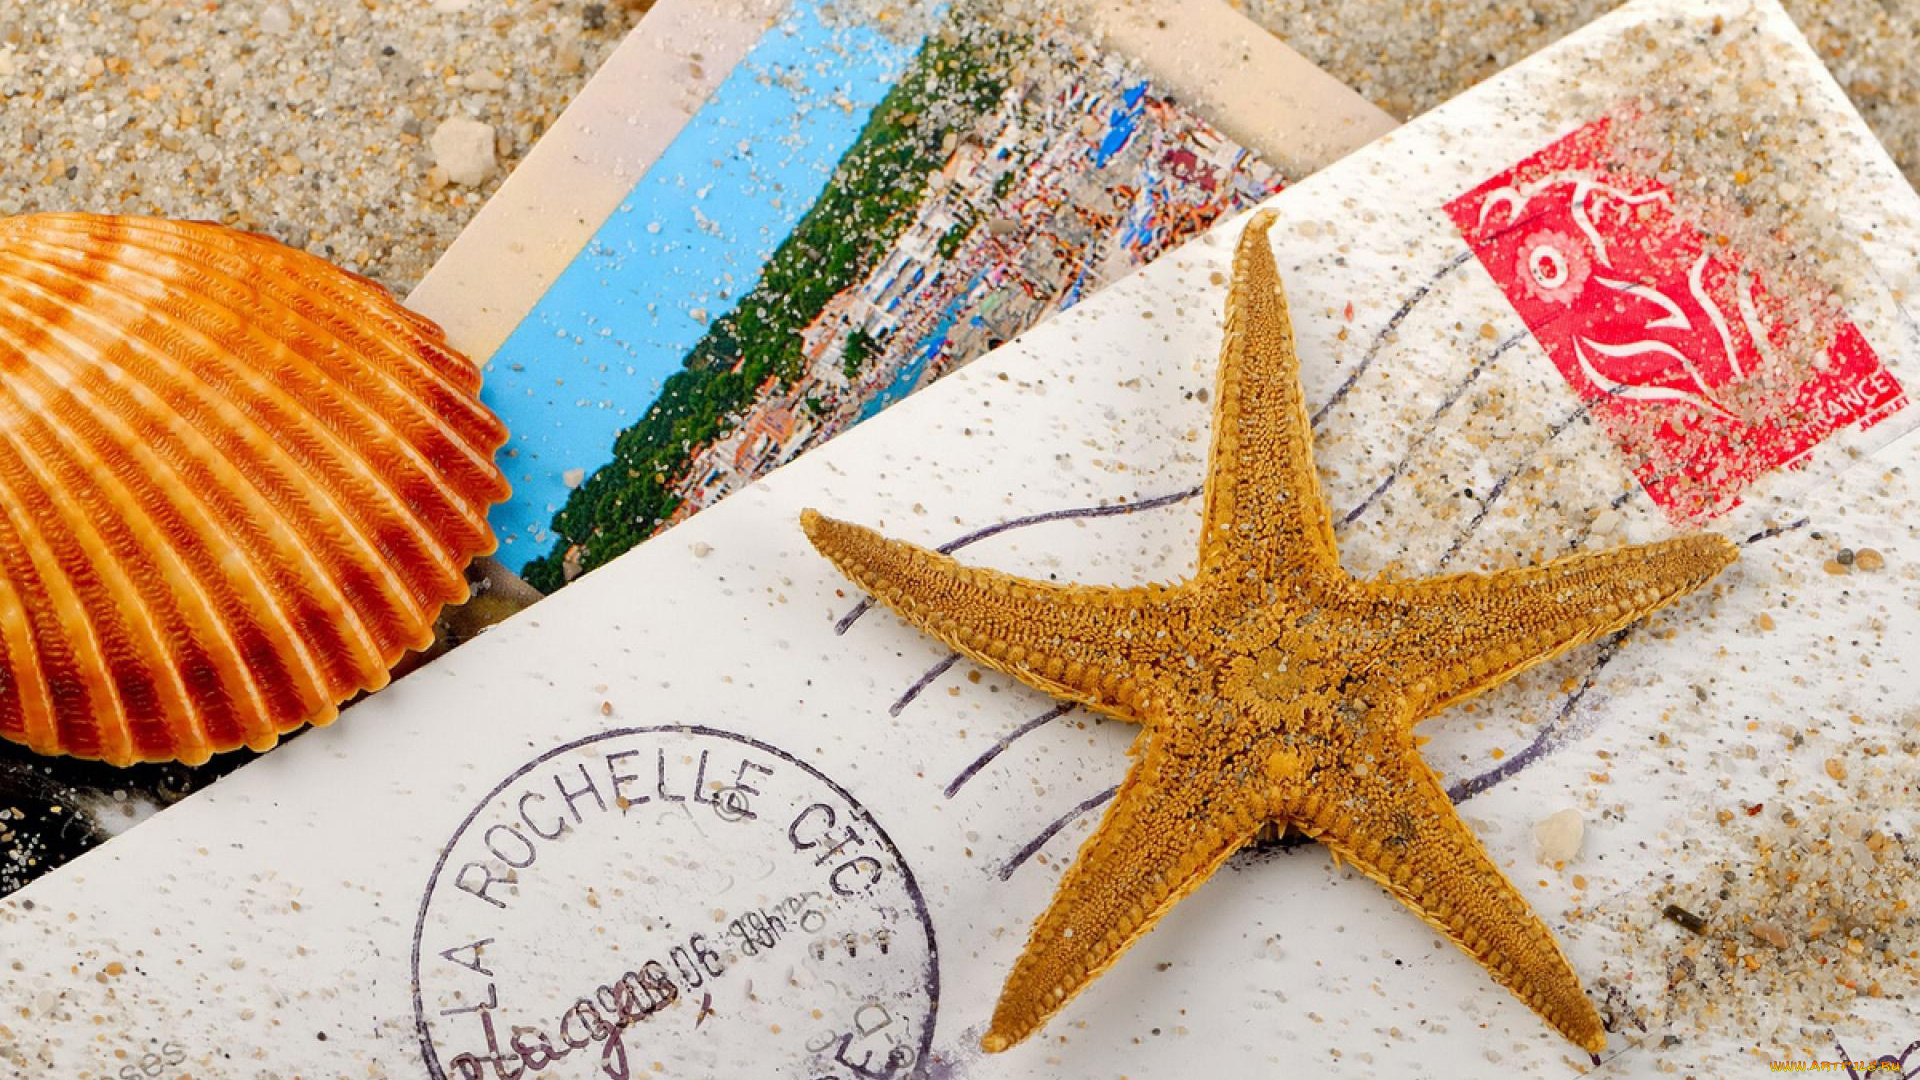 разное, ракушки, , кораллы, , декоративные, и, spa-камни, ракушка, песок, морская, звезда, письмо, конверт, фотография, открытка